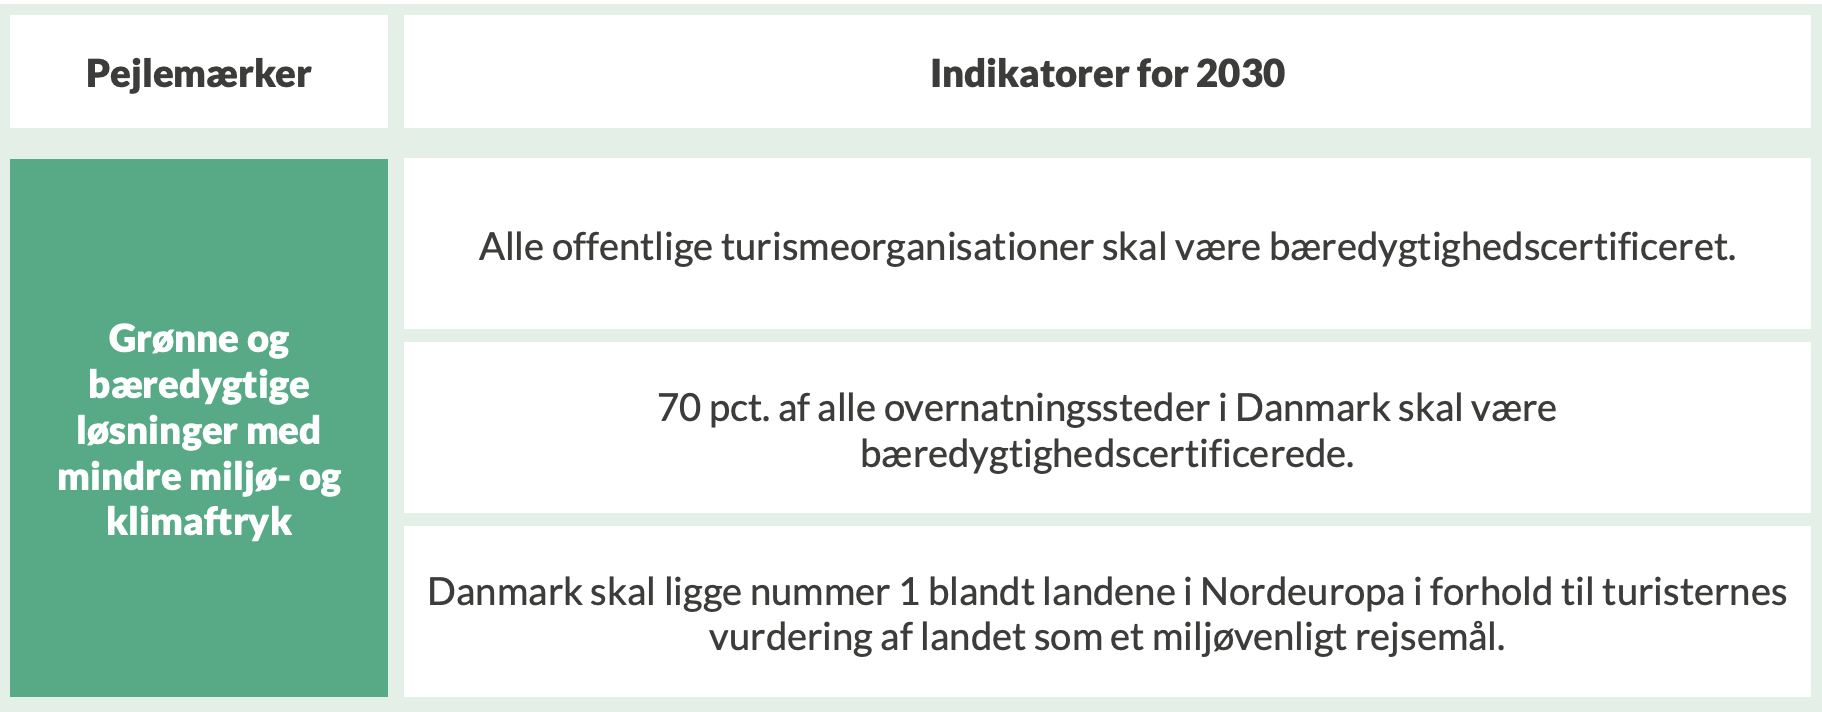 Det grønne pejlemærke med tilhørende indikatorer i National strategi for bæredygtig vækst i dansk turisme, 2022.